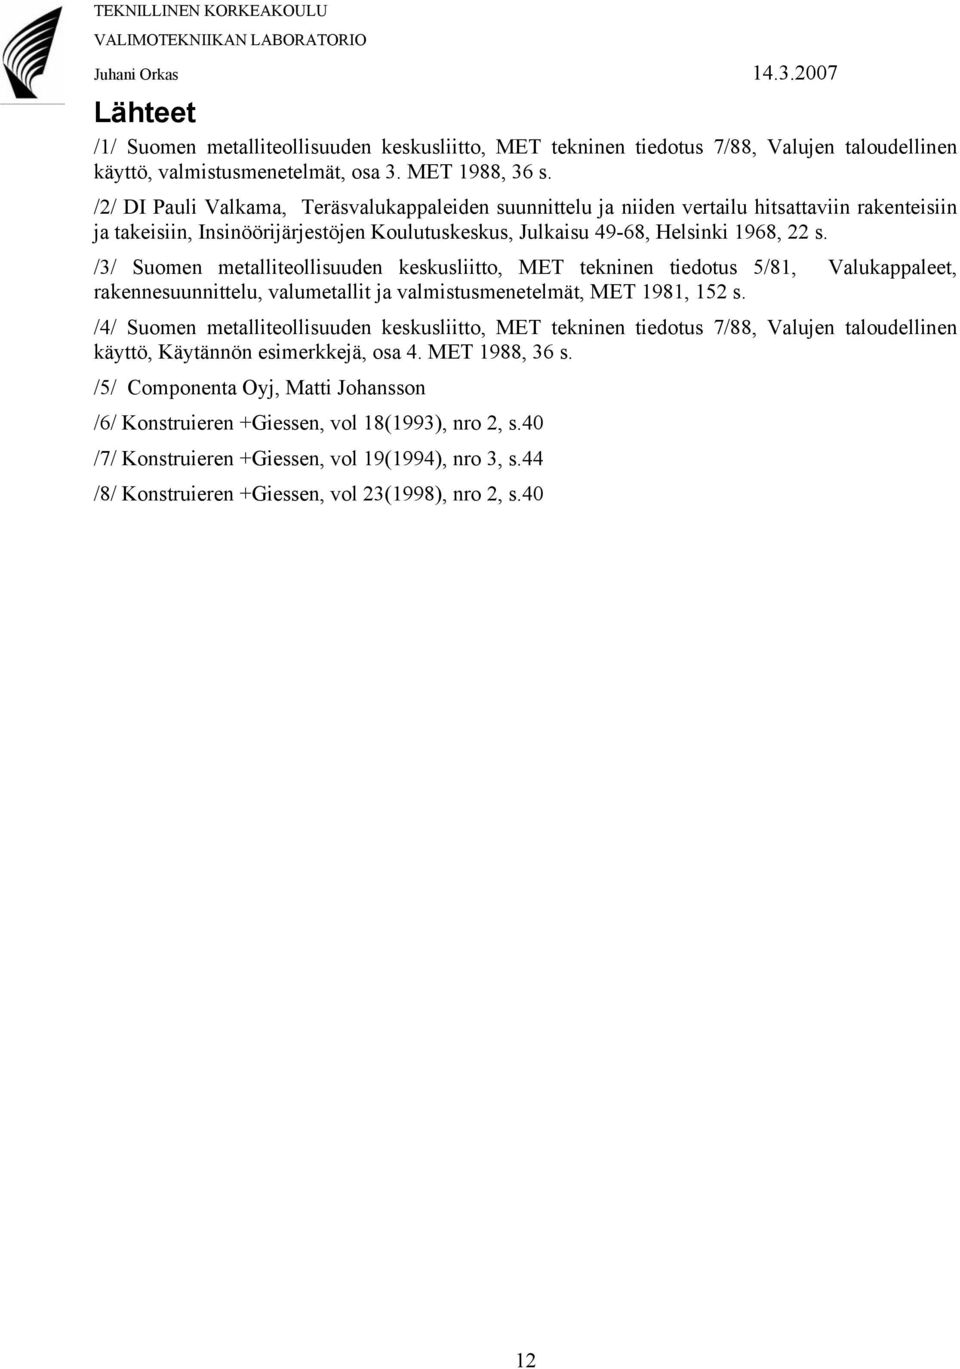 /3/ Suomen metalliteollisuuden keskusliitto, MET tekninen tiedotus 5/81, Valukappaleet, rakennesuunnittelu, valumetallit ja valmistusmenetelmät, MET 1981, 152 s.